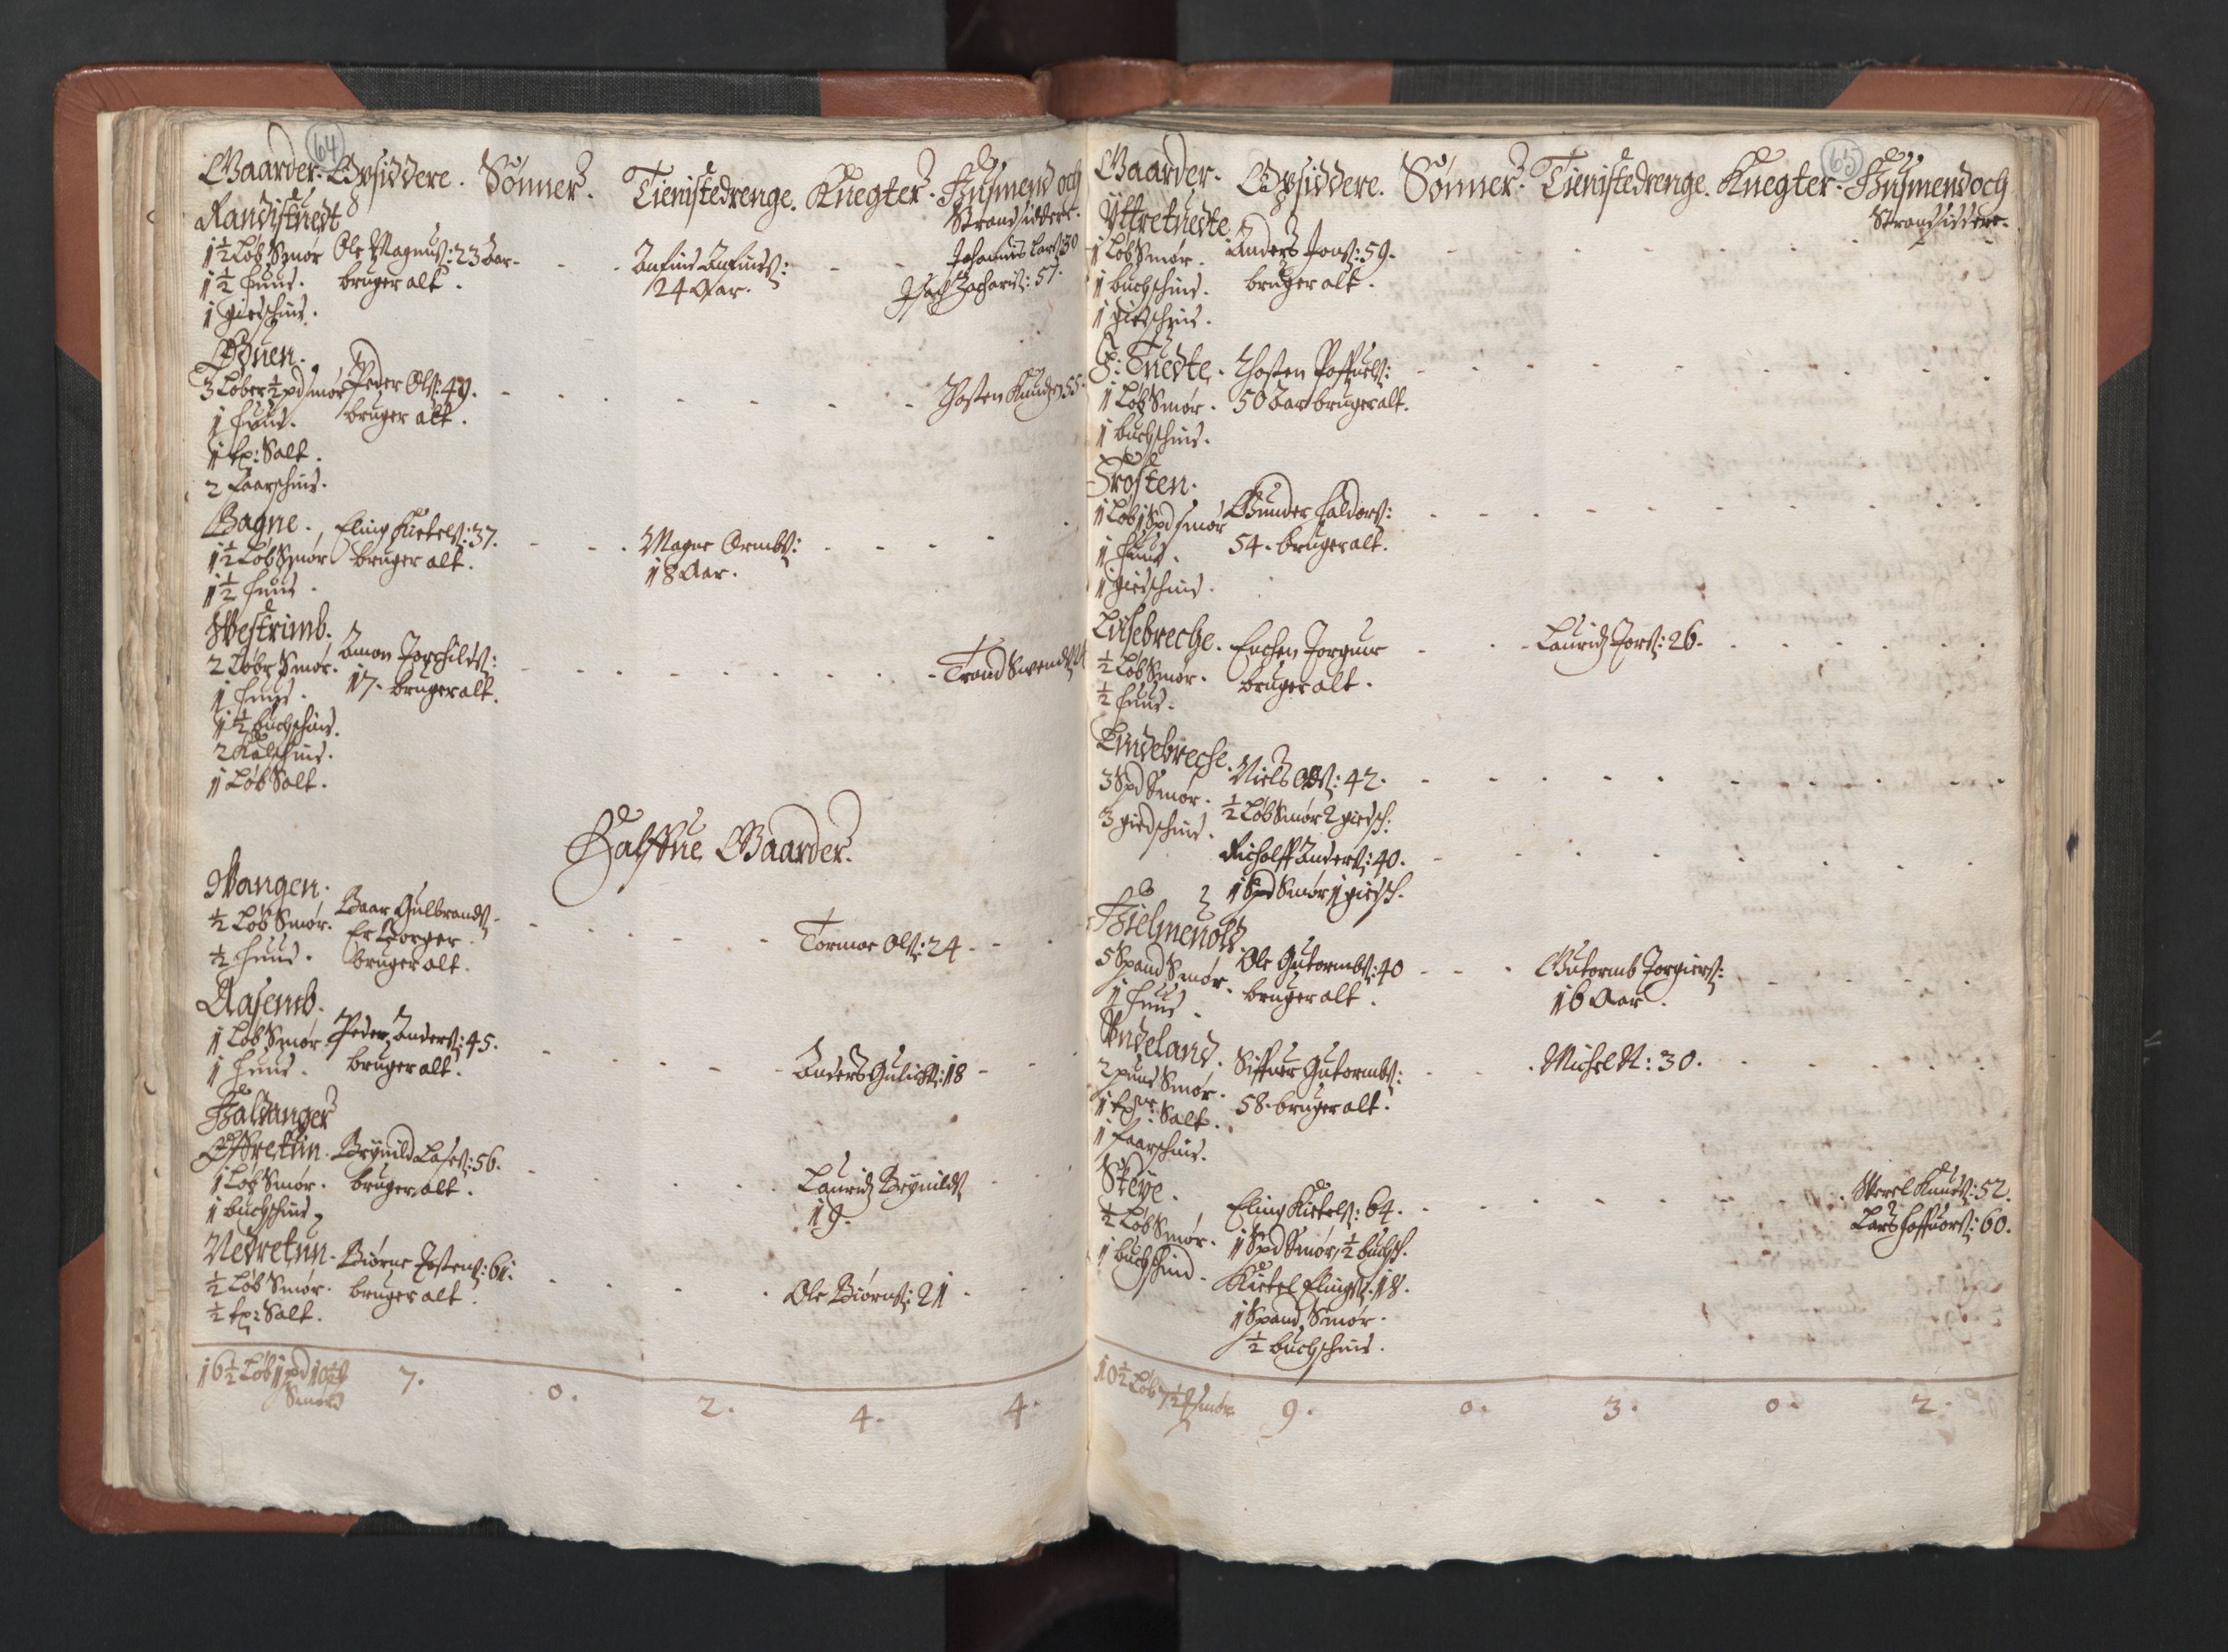 RA, Bailiff's Census 1664-1666, no. 14: Hardanger len, Ytre Sogn fogderi and Indre Sogn fogderi, 1664-1665, p. 64-65